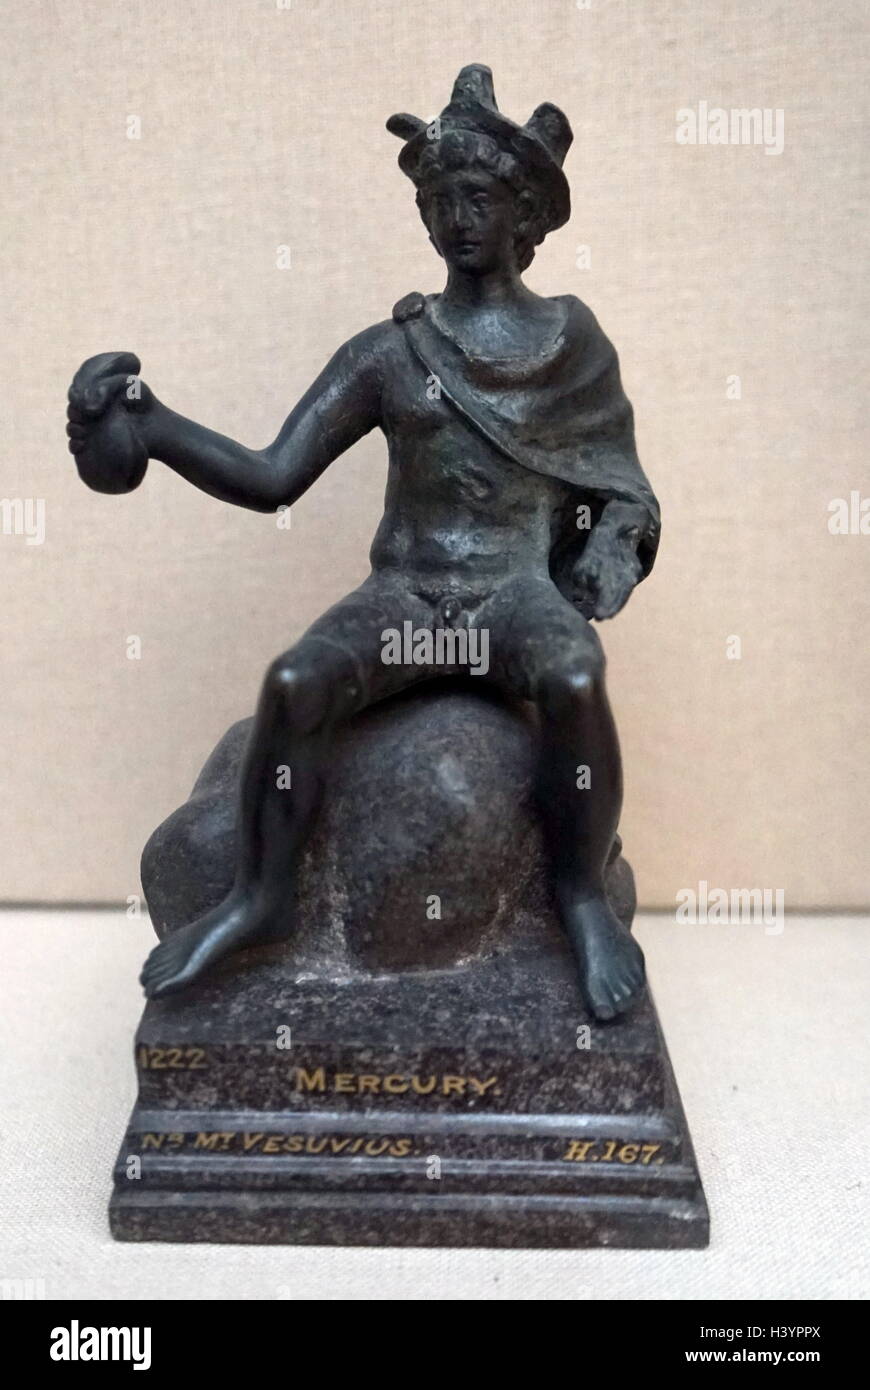 1er siècle après JC, statuette en bronze représentant le dieu romain Mercure. le sud de l'Italie. Mercure, dieu romain du commerce est messager des dieux. Banque D'Images